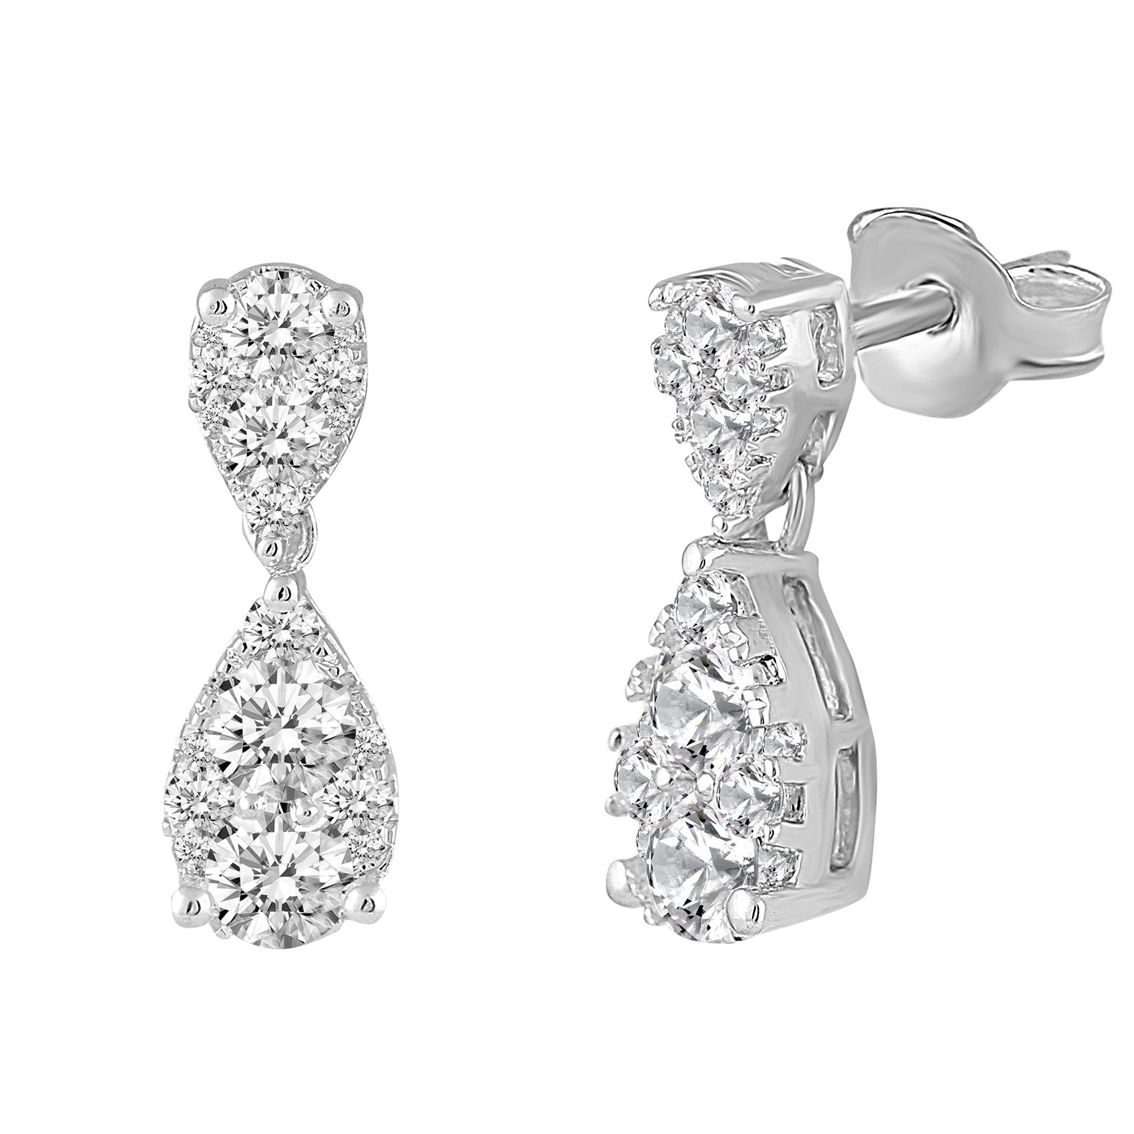 Royal Aura 14K White Gold 1 1/2CTW Diamond Stud Earrings - Image 2 of 5